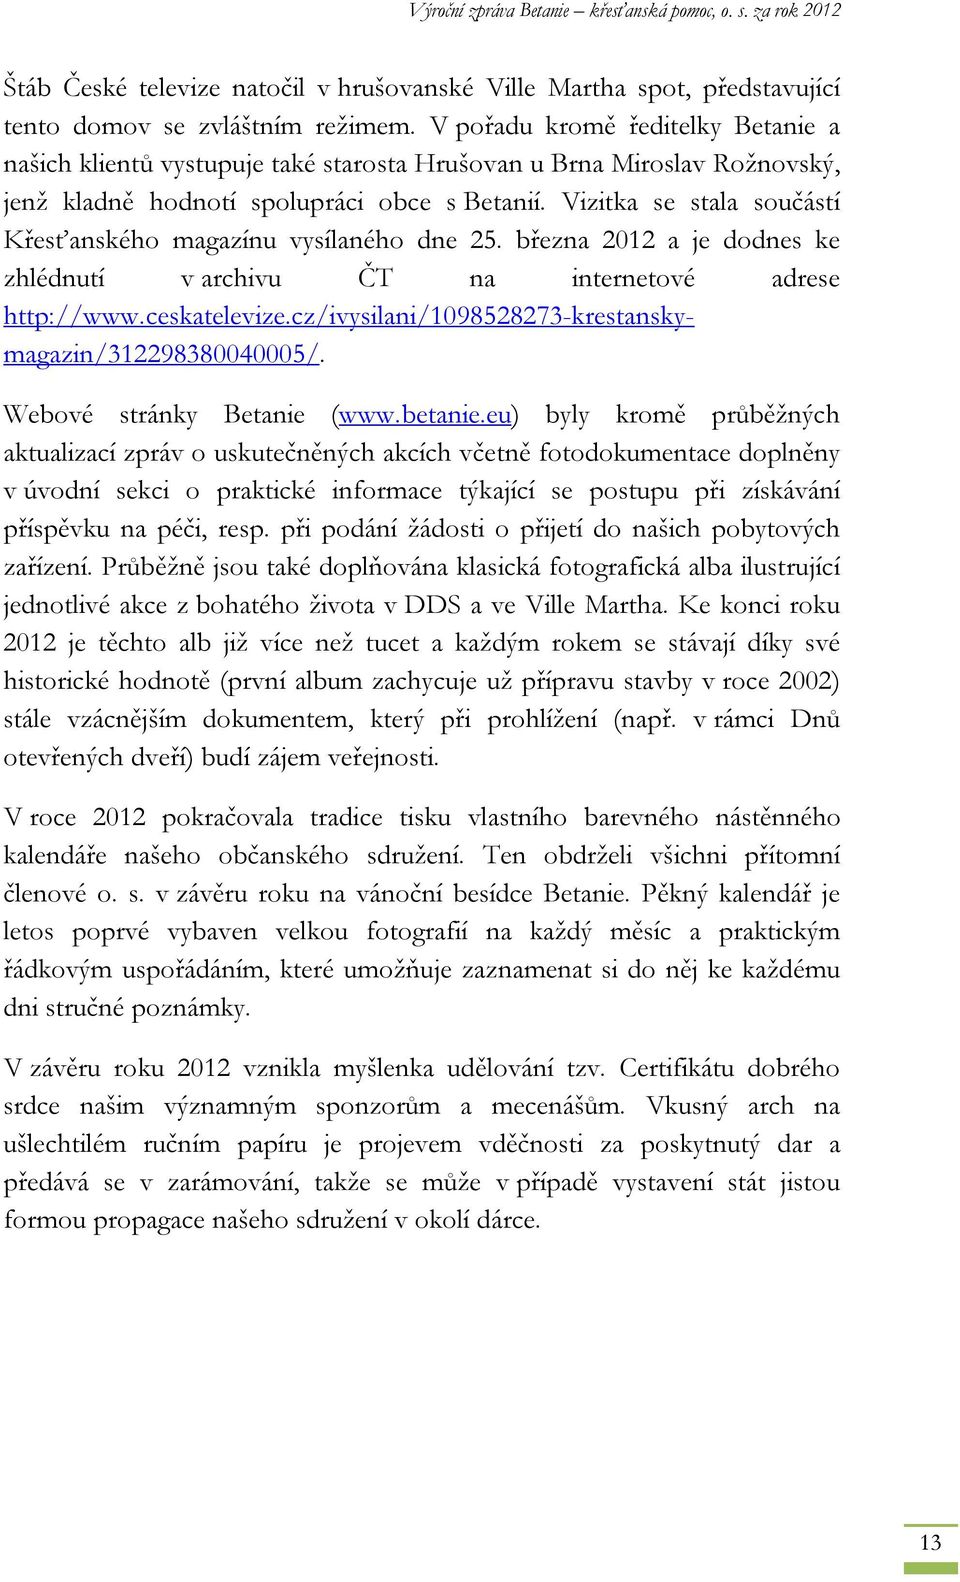 Vizitka se stala součástí Křesťanského magazínu vysílaného dne 25. března 2012 a je dodnes ke zhlédnutí v archivu ČT na internetové adrese http://www.ceskatelevize.